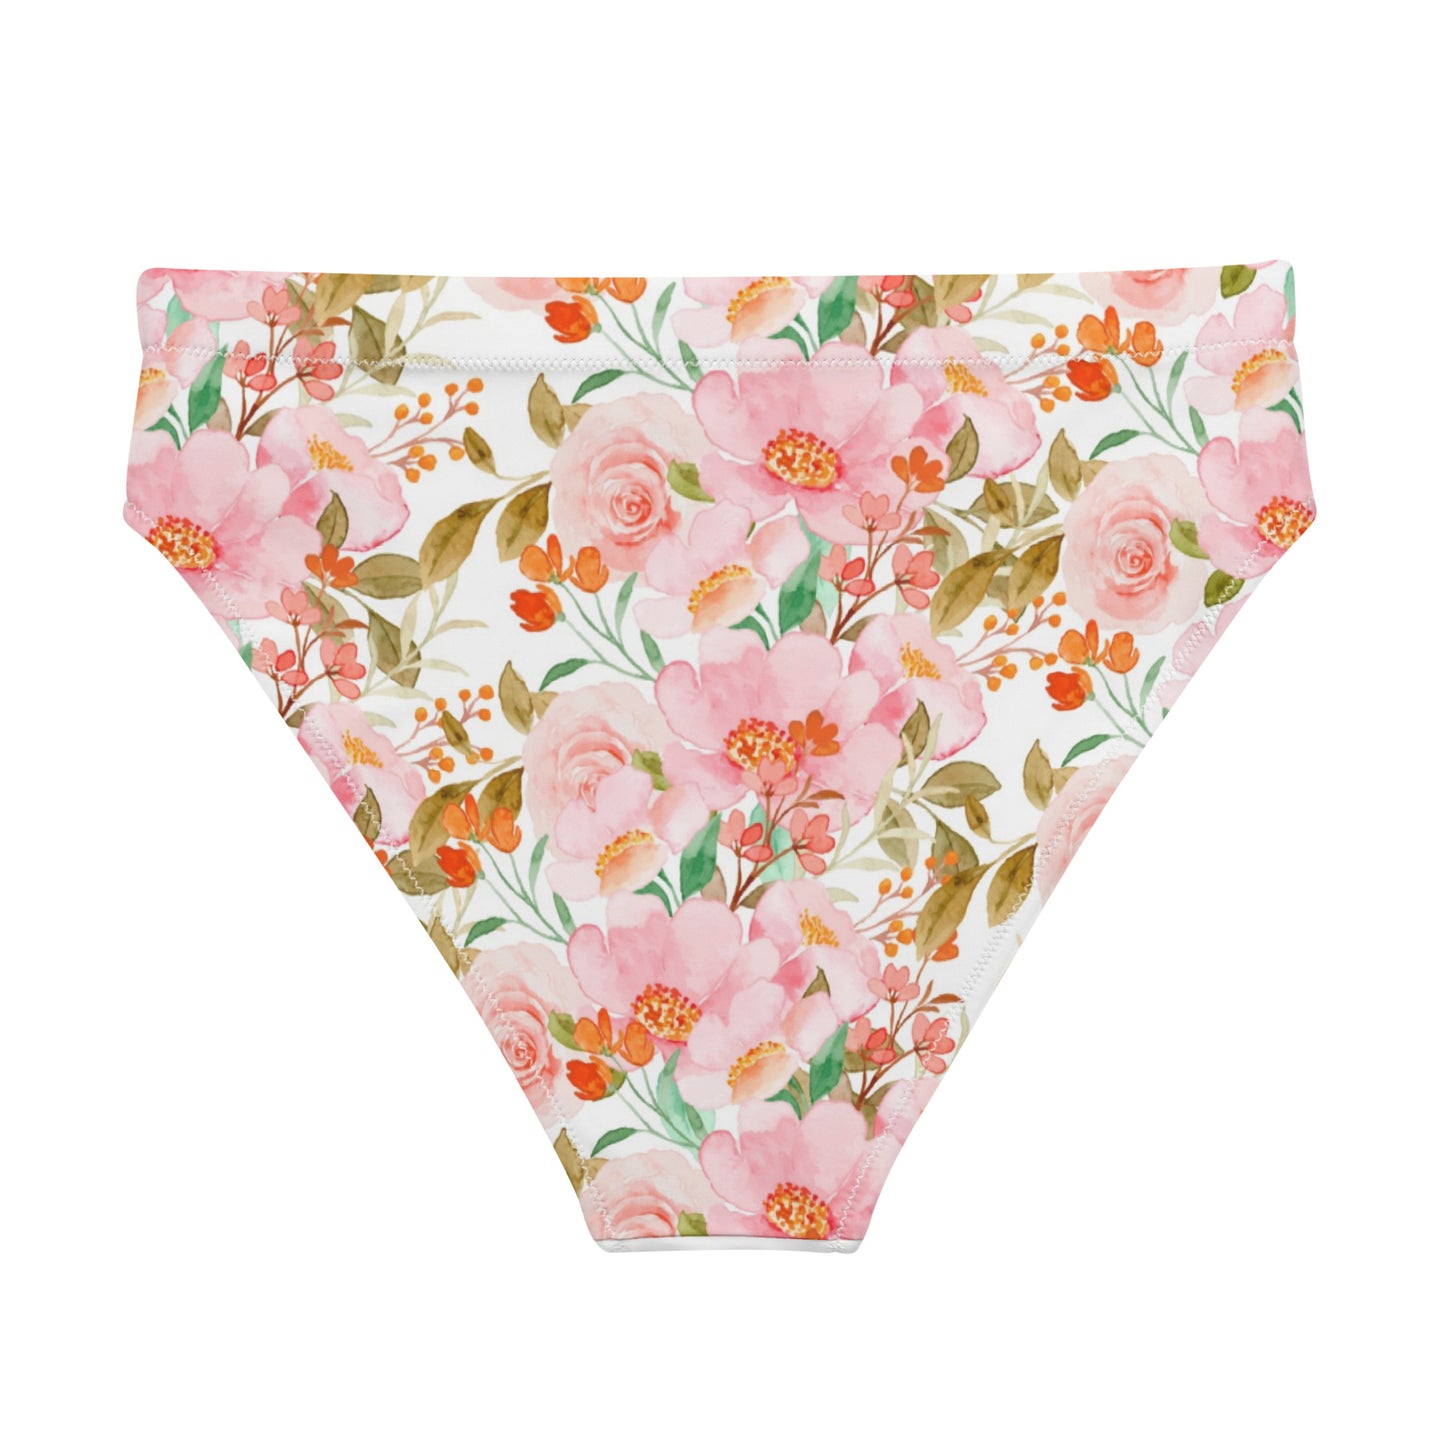 Blossom high-waisted bikini bottom